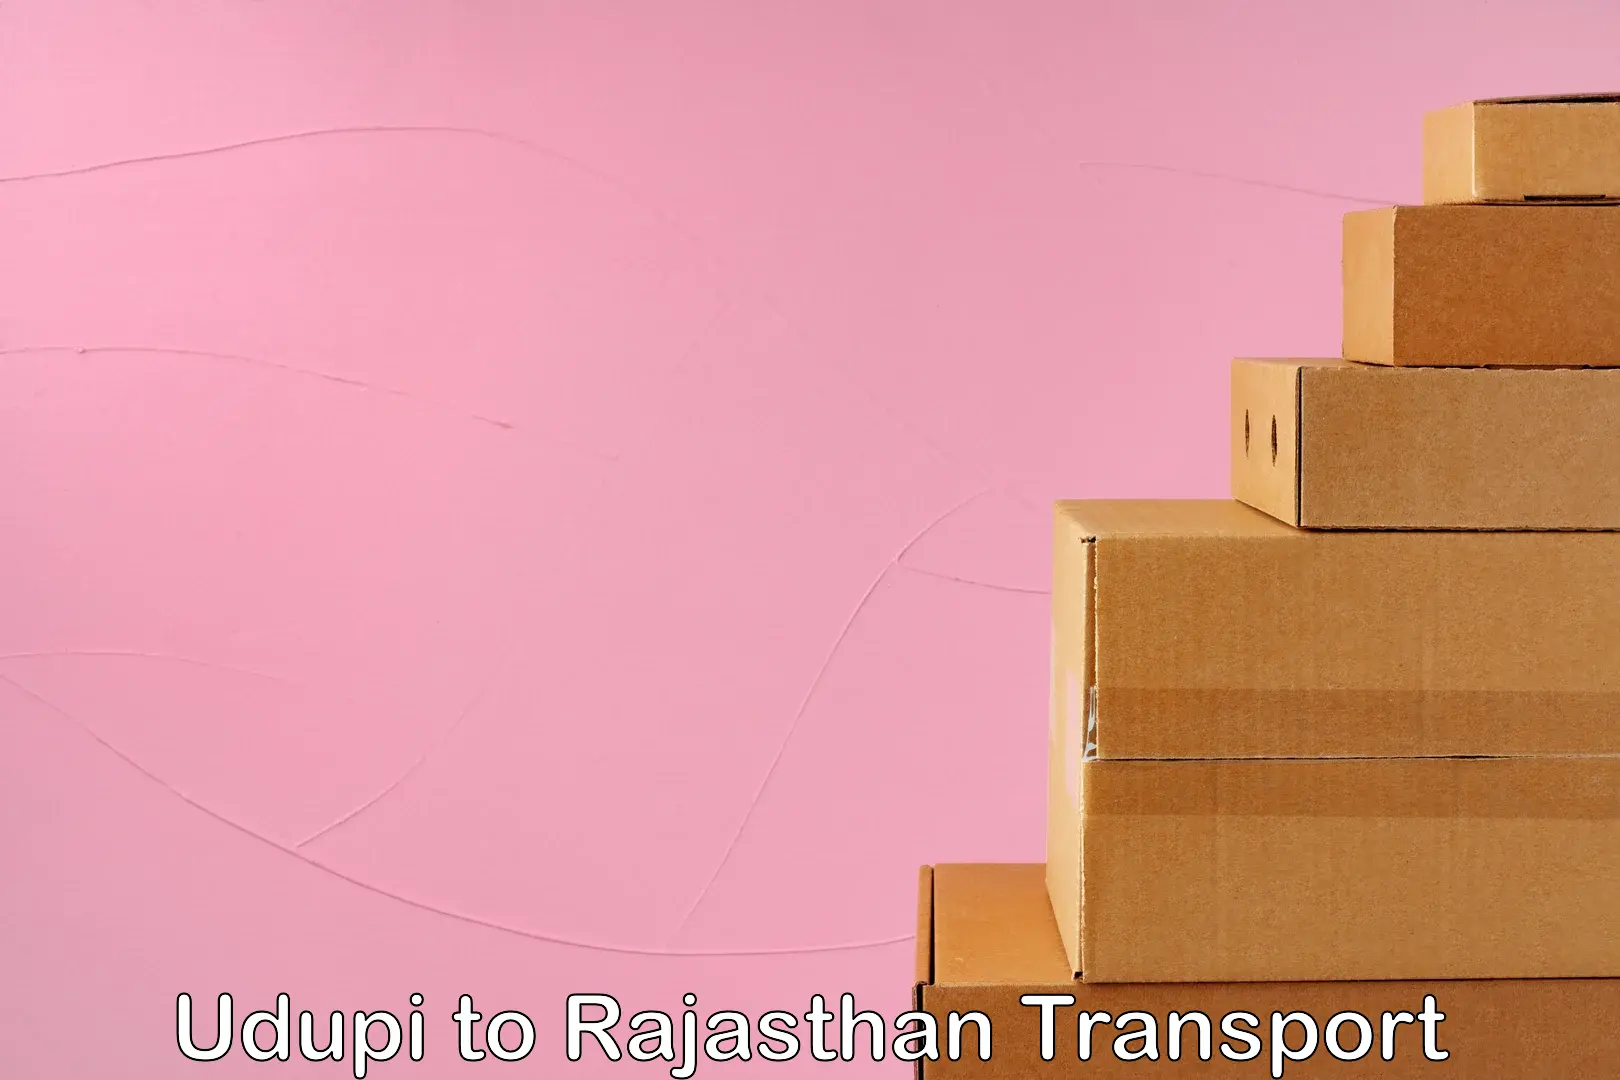 Commercial transport service Udupi to Rajasthan